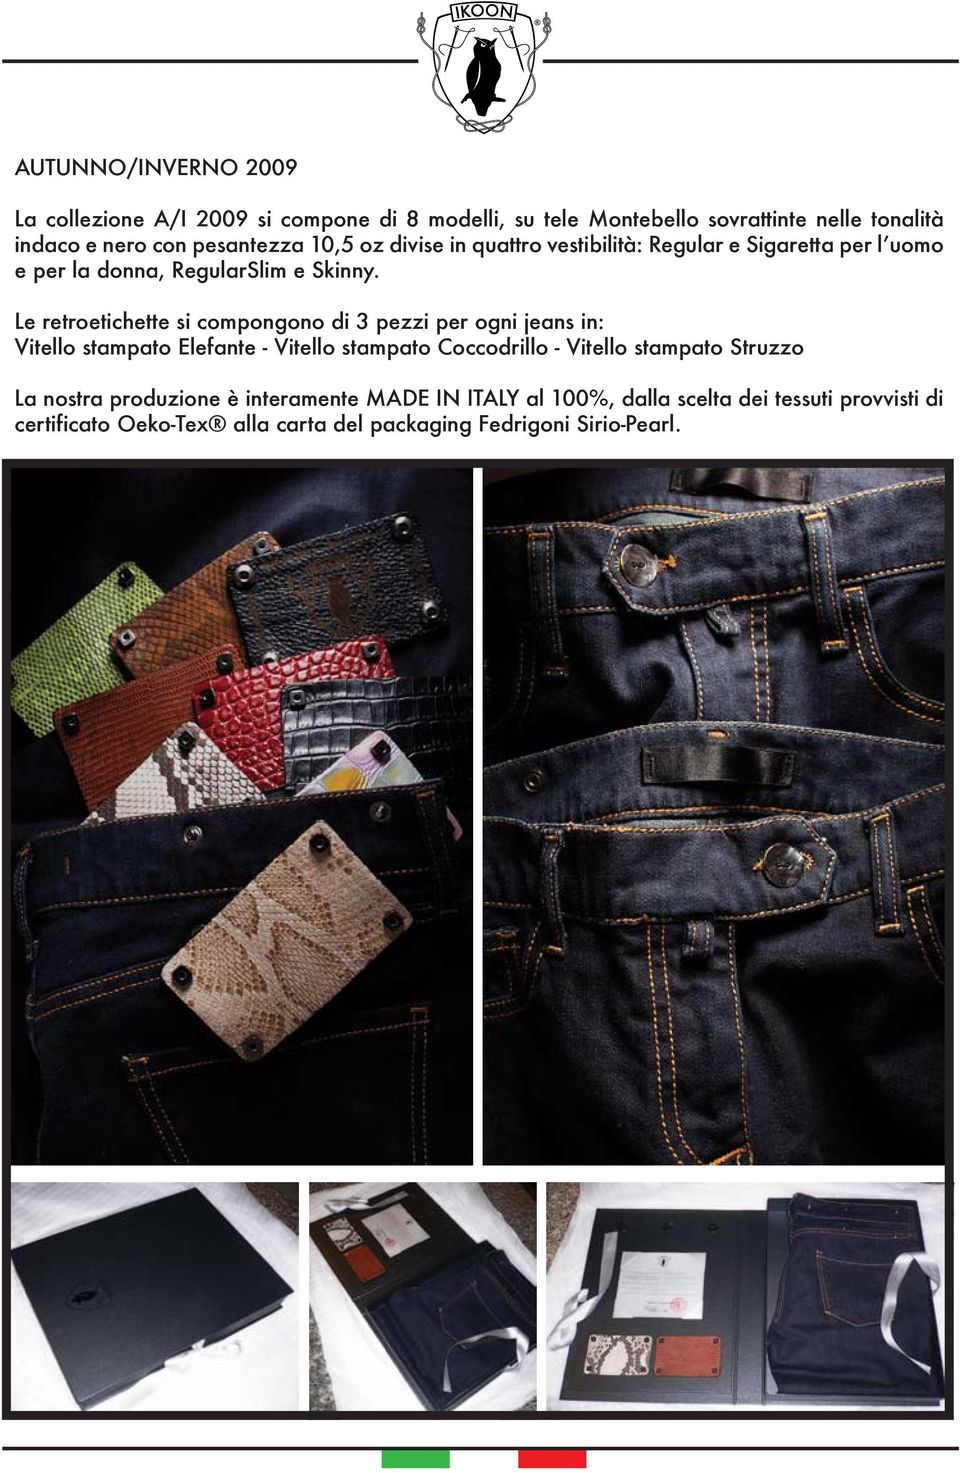 Le retroetichette si compongono di 3 pezzi per ogni jeans in: Vitello stampato Elefante - Vitello stampato Coccodrillo - Vitello stampato